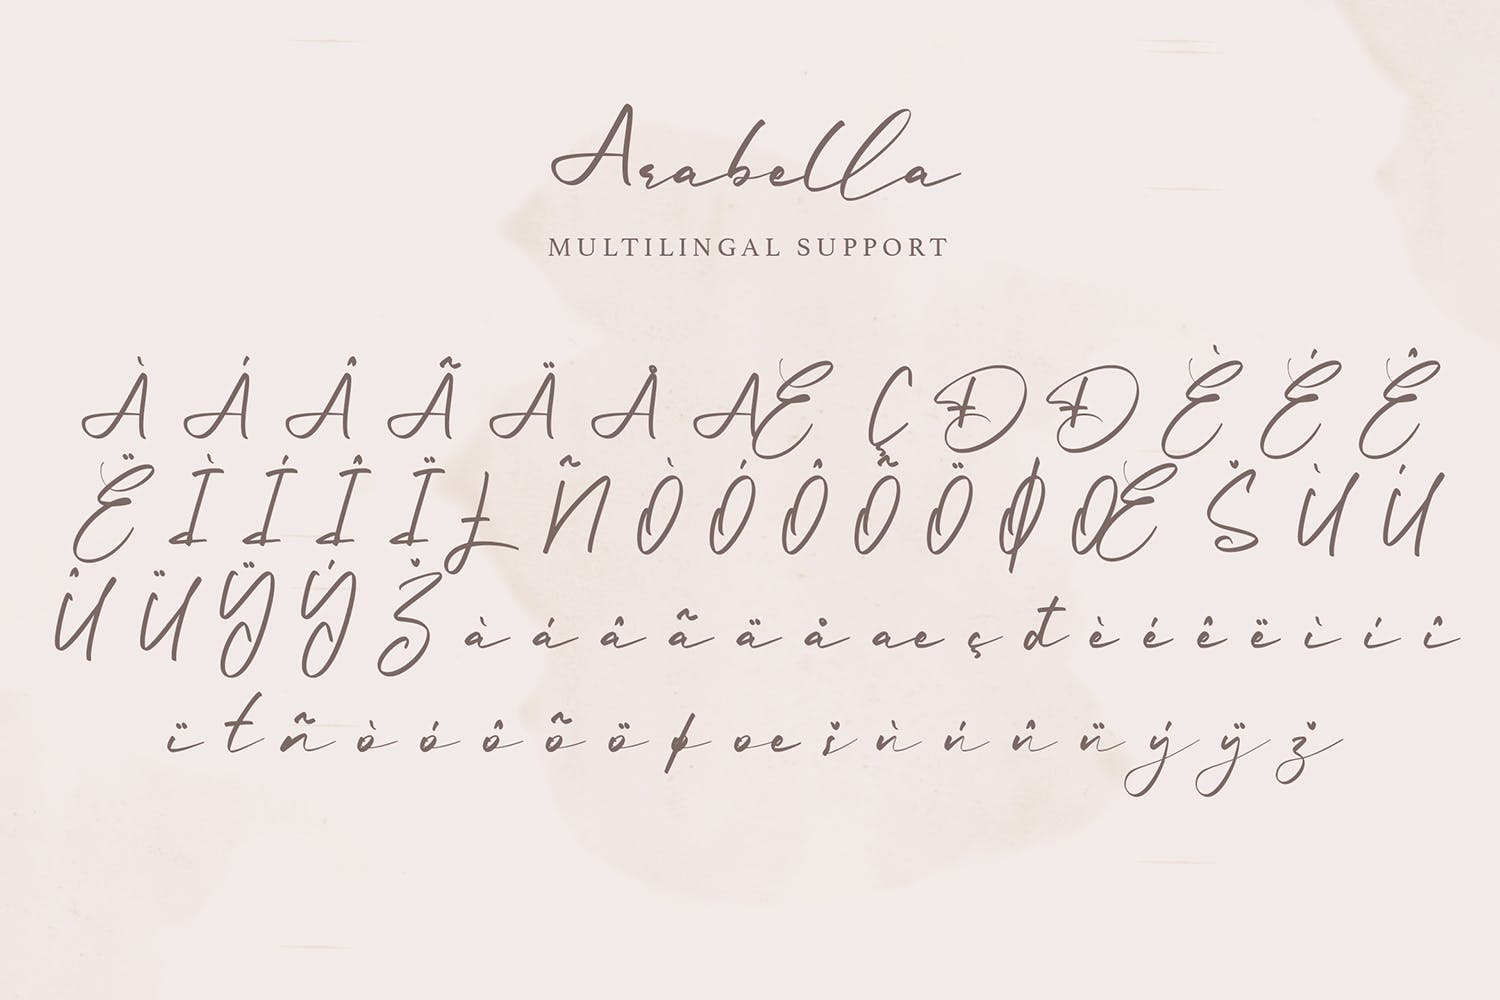 手写书法风格英文签名字体 Arabella | Elegant Signature Font设计素材模板